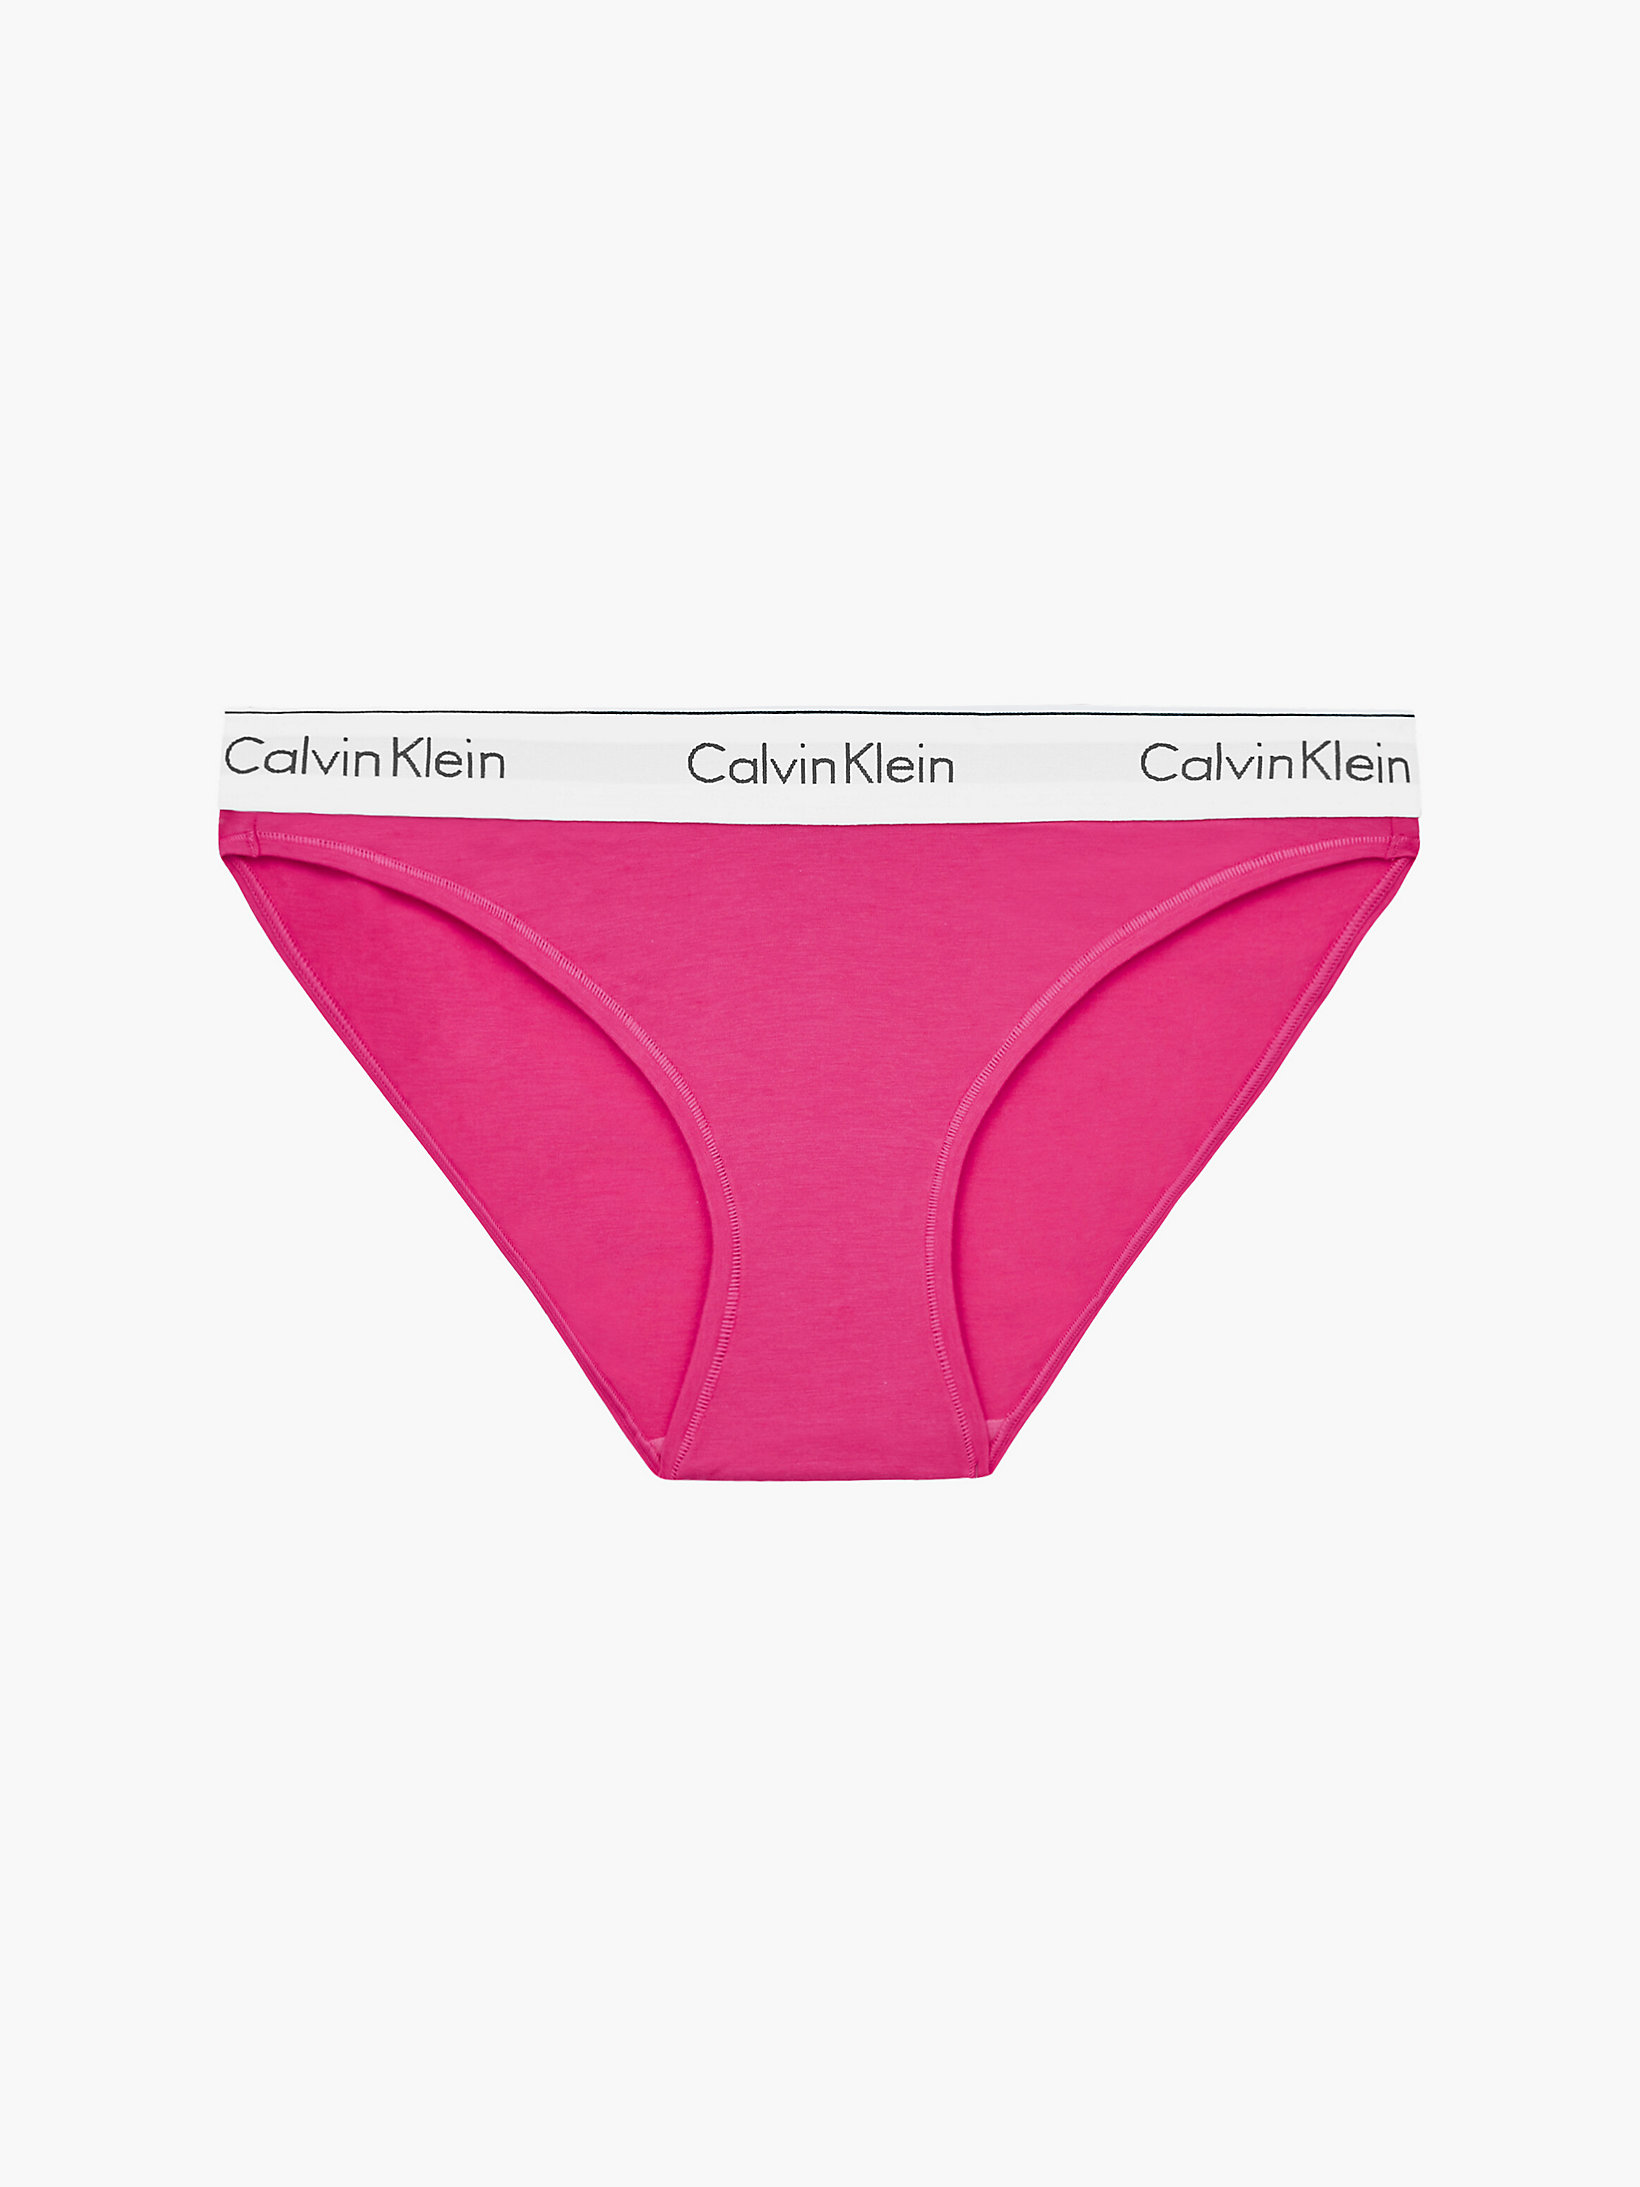 Raspberry Sorbet Bikini Brief - Modern Cotton undefined women Calvin Klein